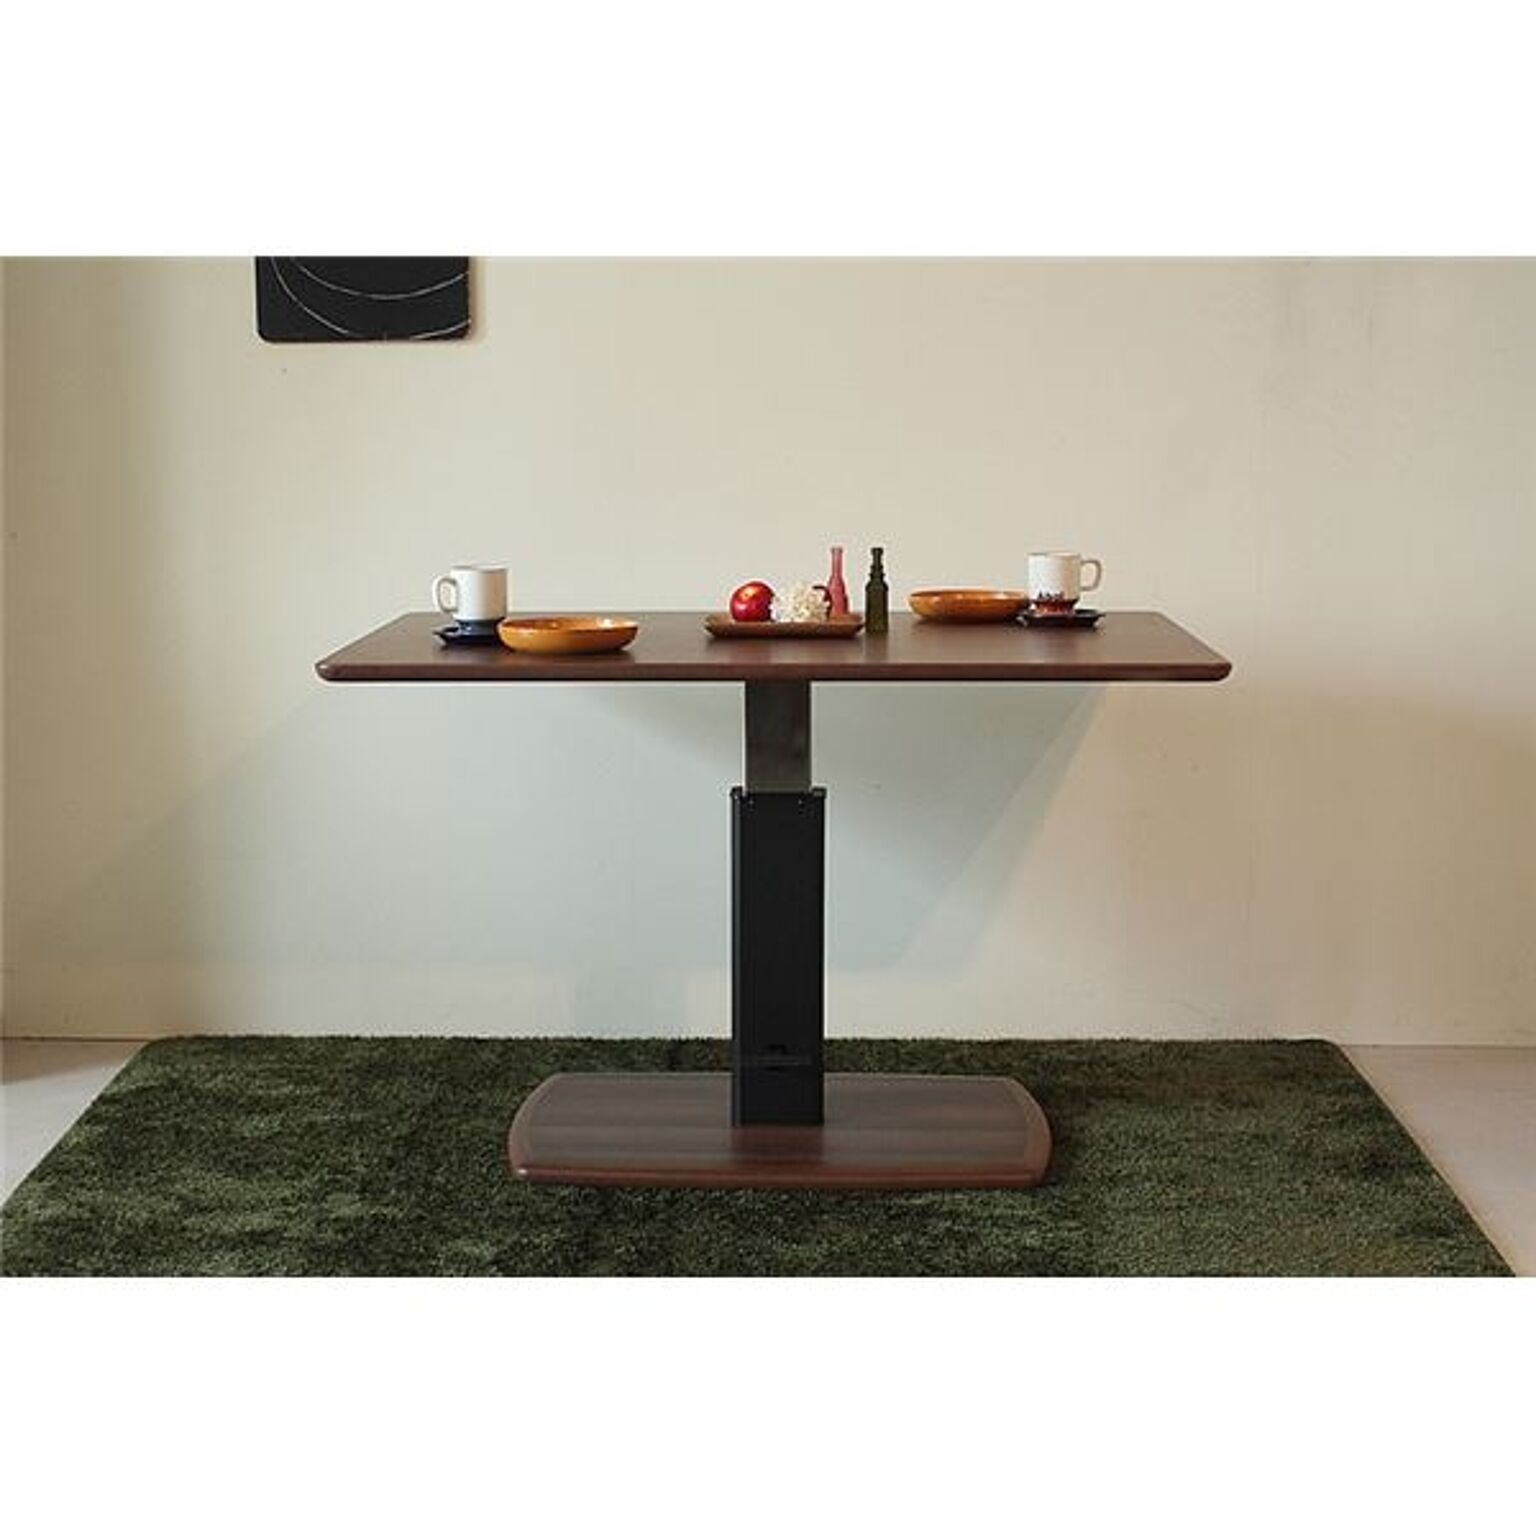 ダイニングテーブル(昇降式テーブル) 木製 幅120cm×奥行80cm 長方形 無段階調節可 ブラウン【代引不可】